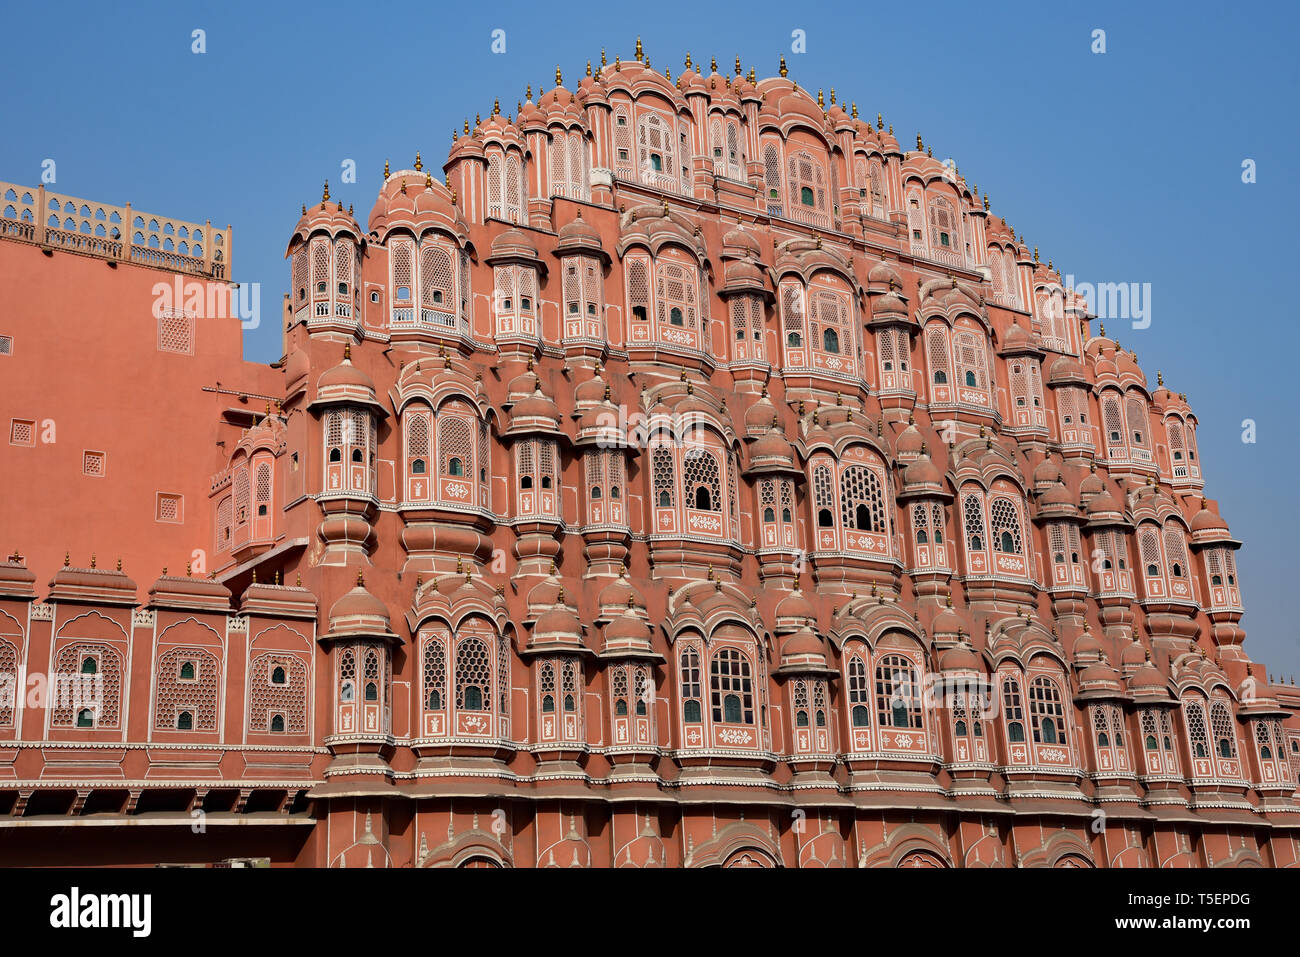 El bellamente ornamentada fachada de arenisca roja y rosada de Hawa Mahal, también conocido como "Palacio de los Vientos", Ciudad Real Palace, Jaipur, en la India occidental, Asia. Foto de stock